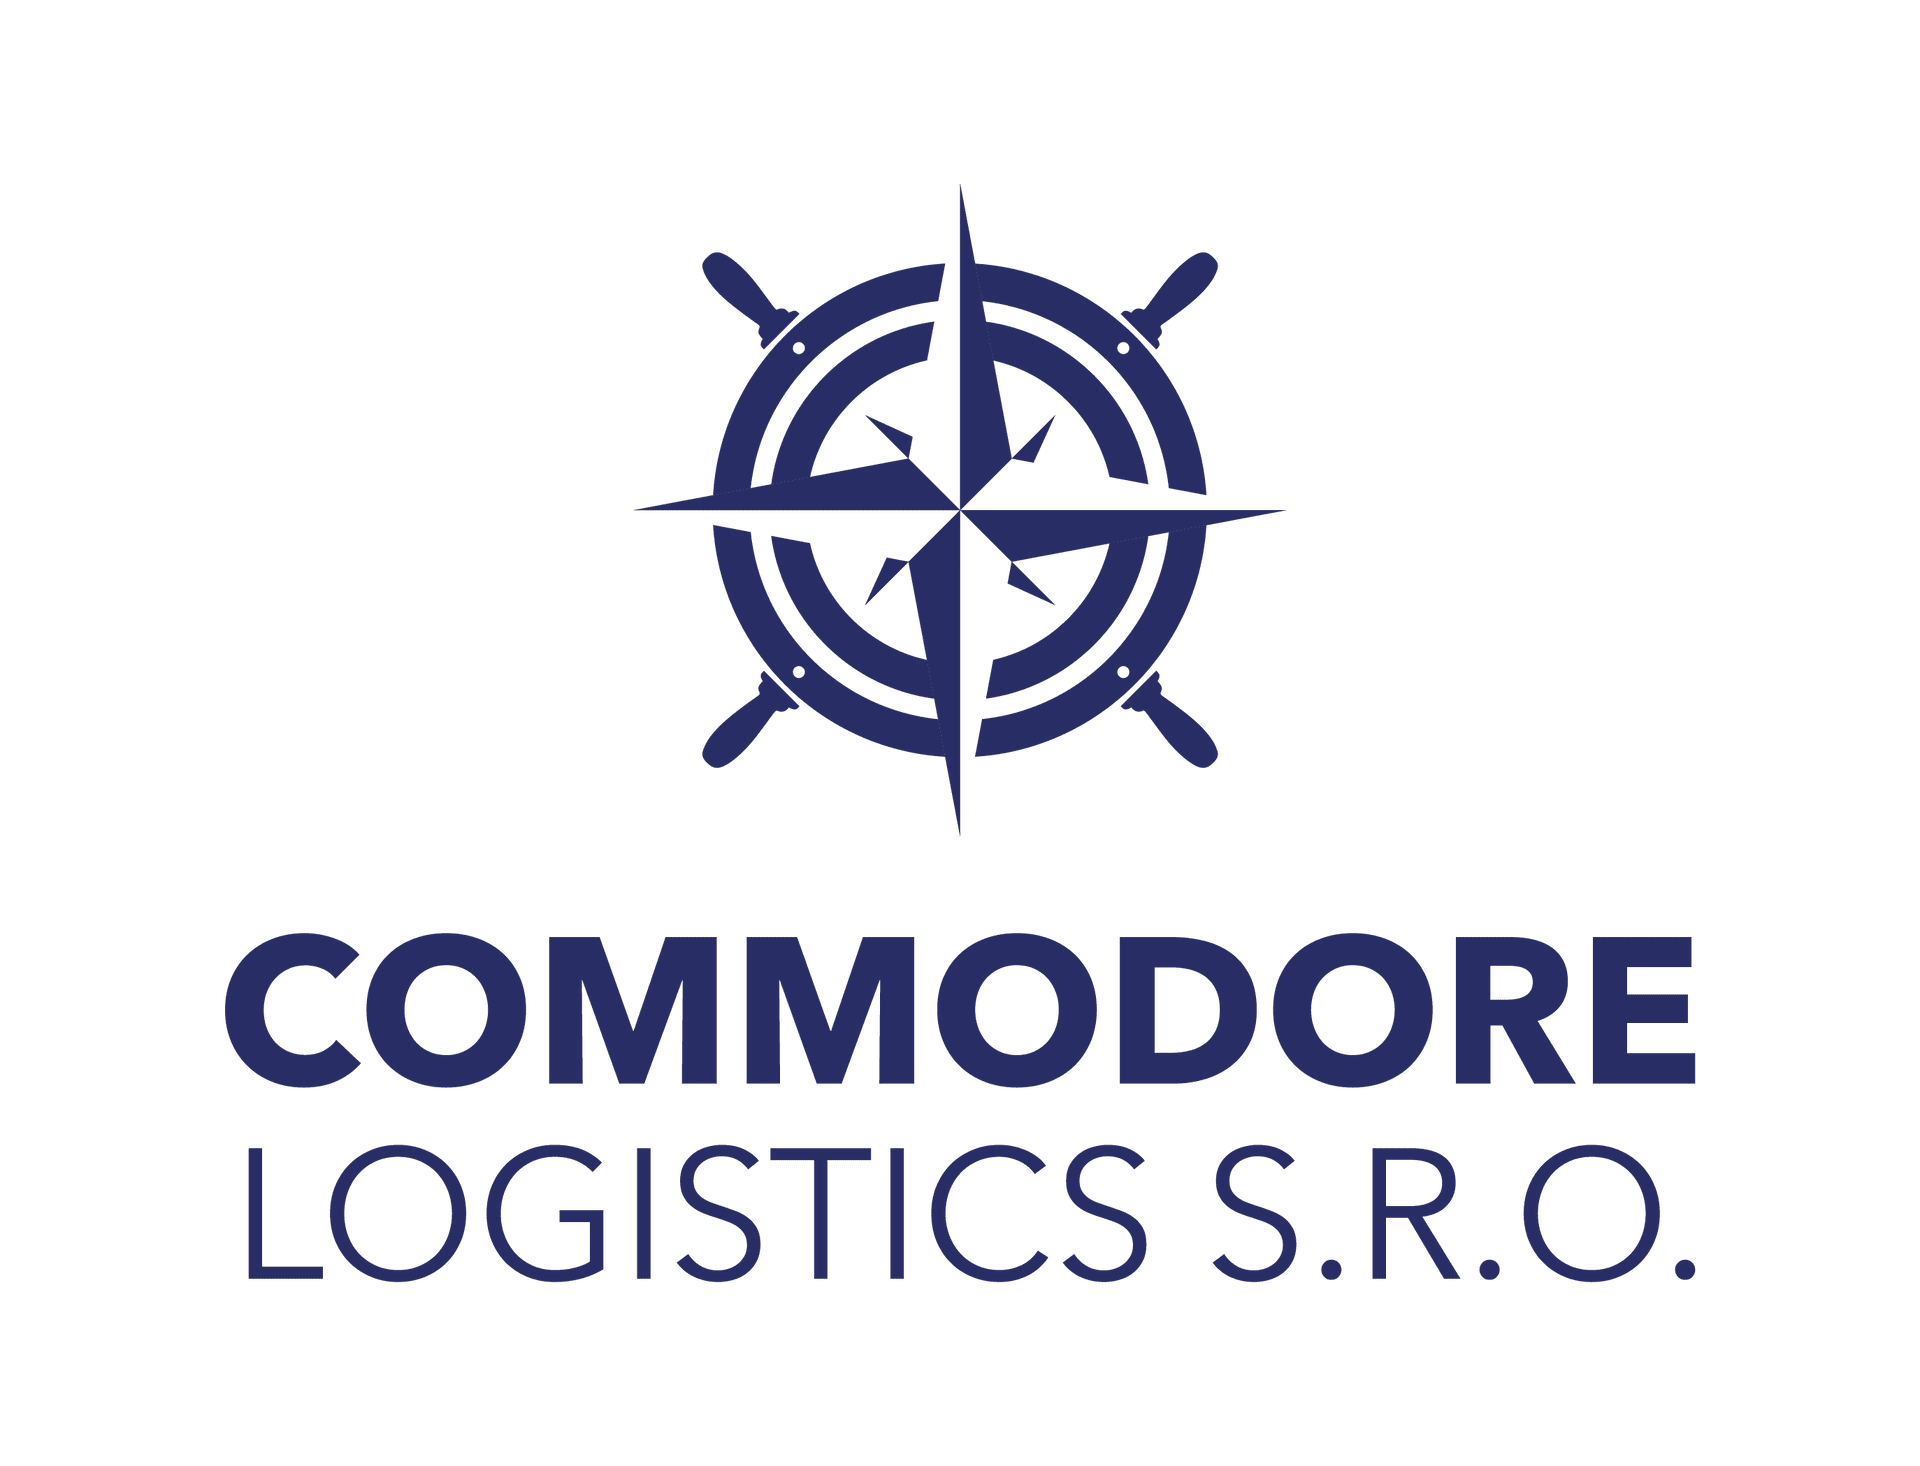 Commodore logistics s.r.o.